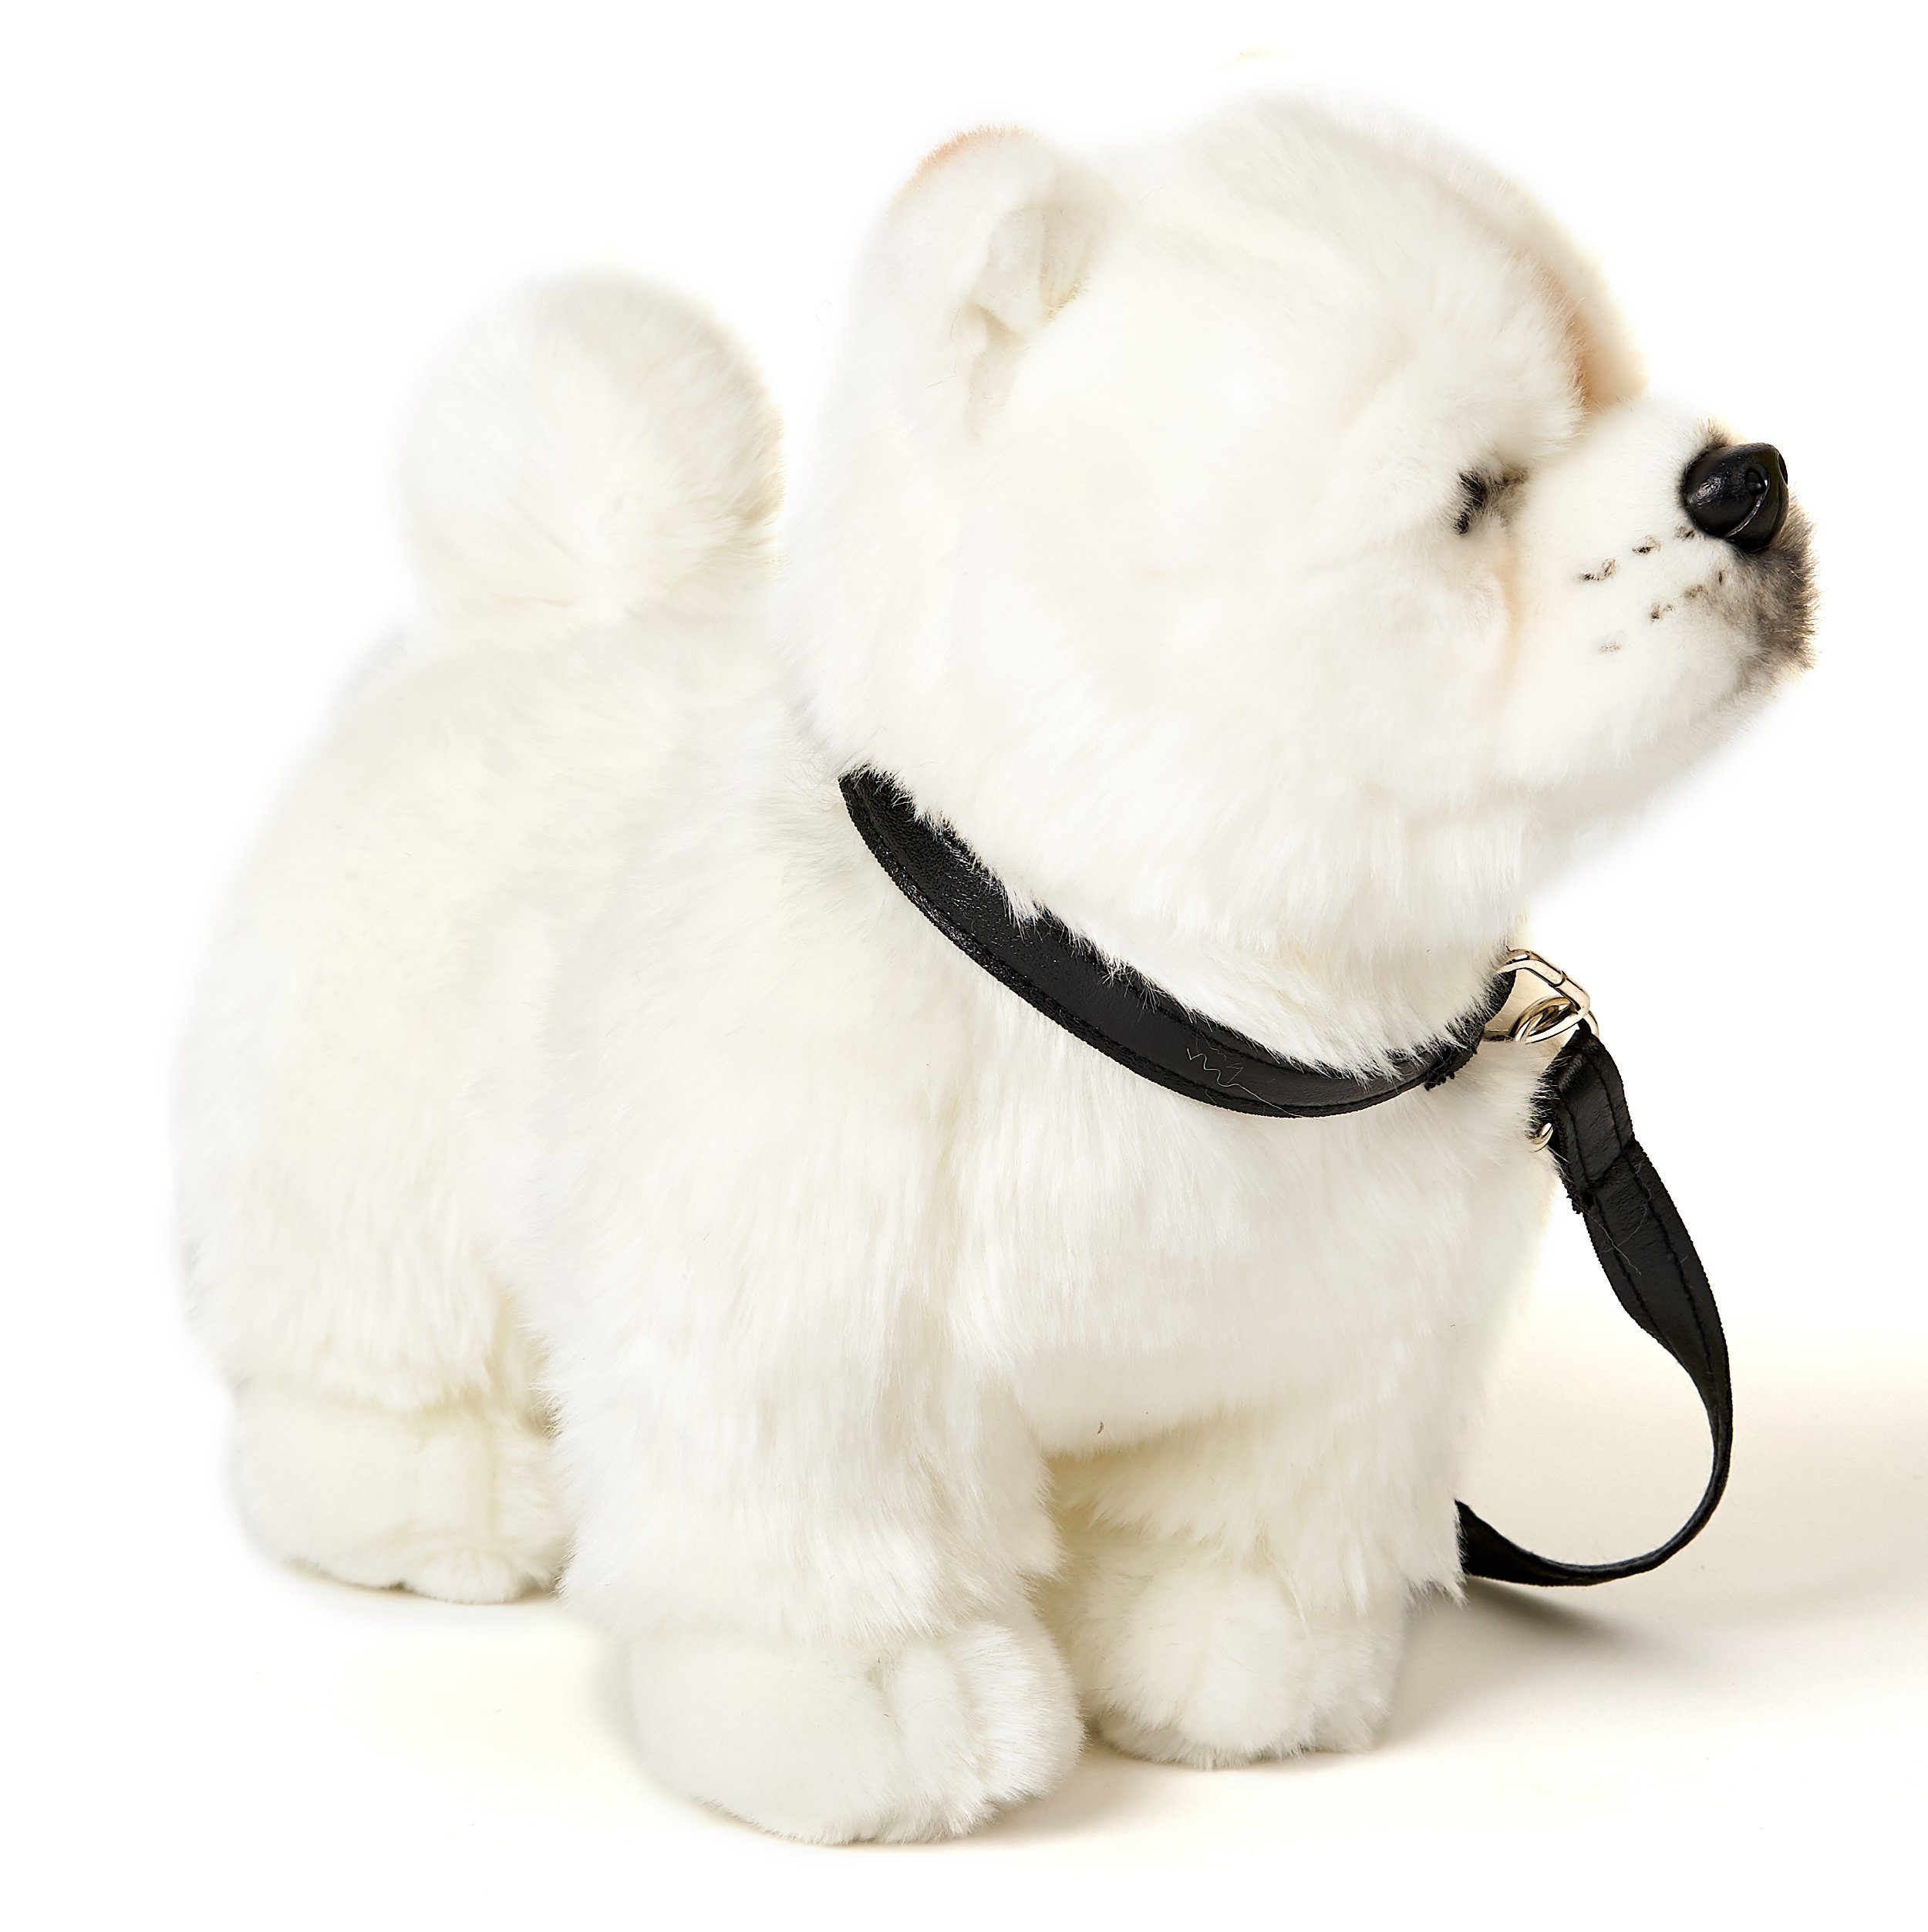 30 Chow zu stehend (m. Leine) Kuscheltier - Plüschtier, Plüsch-Hund weiß, recyceltes % Füllmaterial cm - - Chow Uni-Toys 100